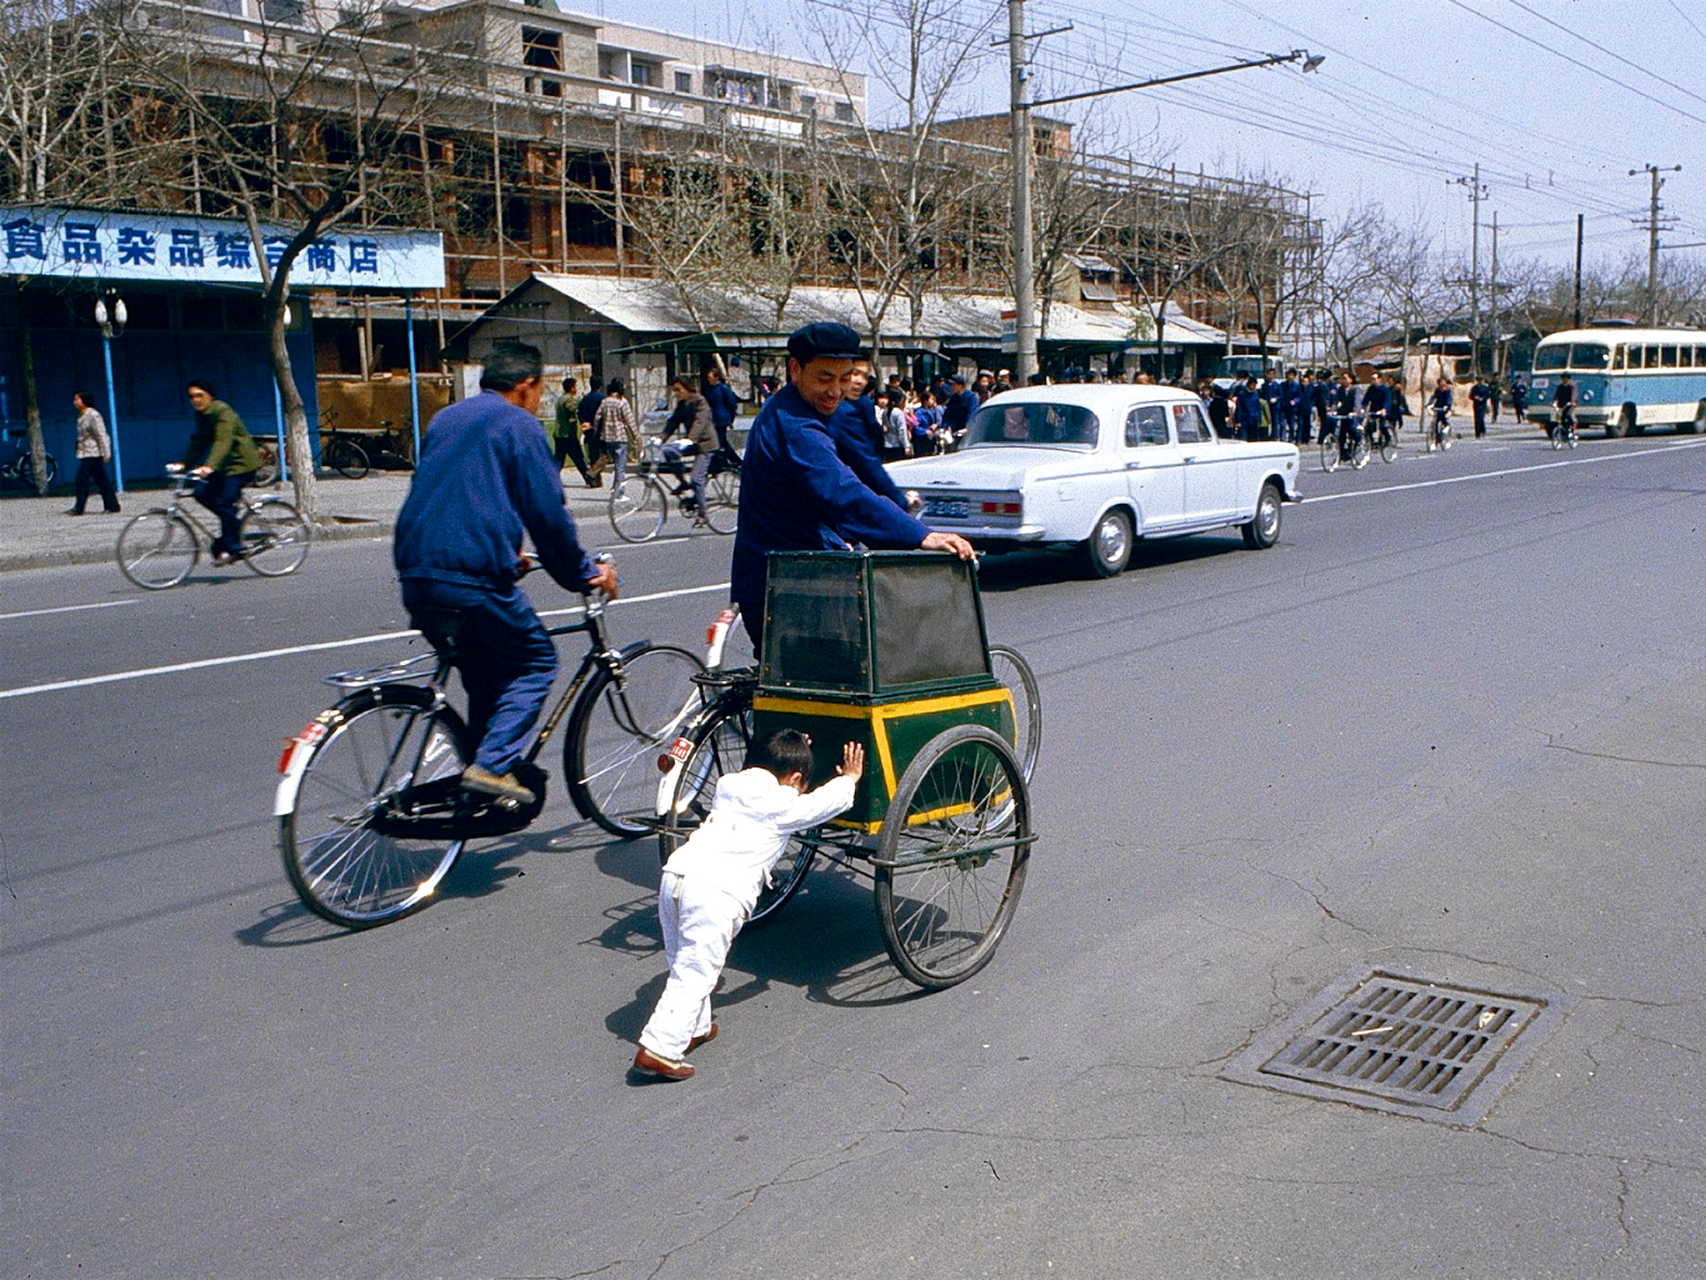 80年代的北京街头,宽广的马路上穿梭的是二八大杠,只有一辆公交车和